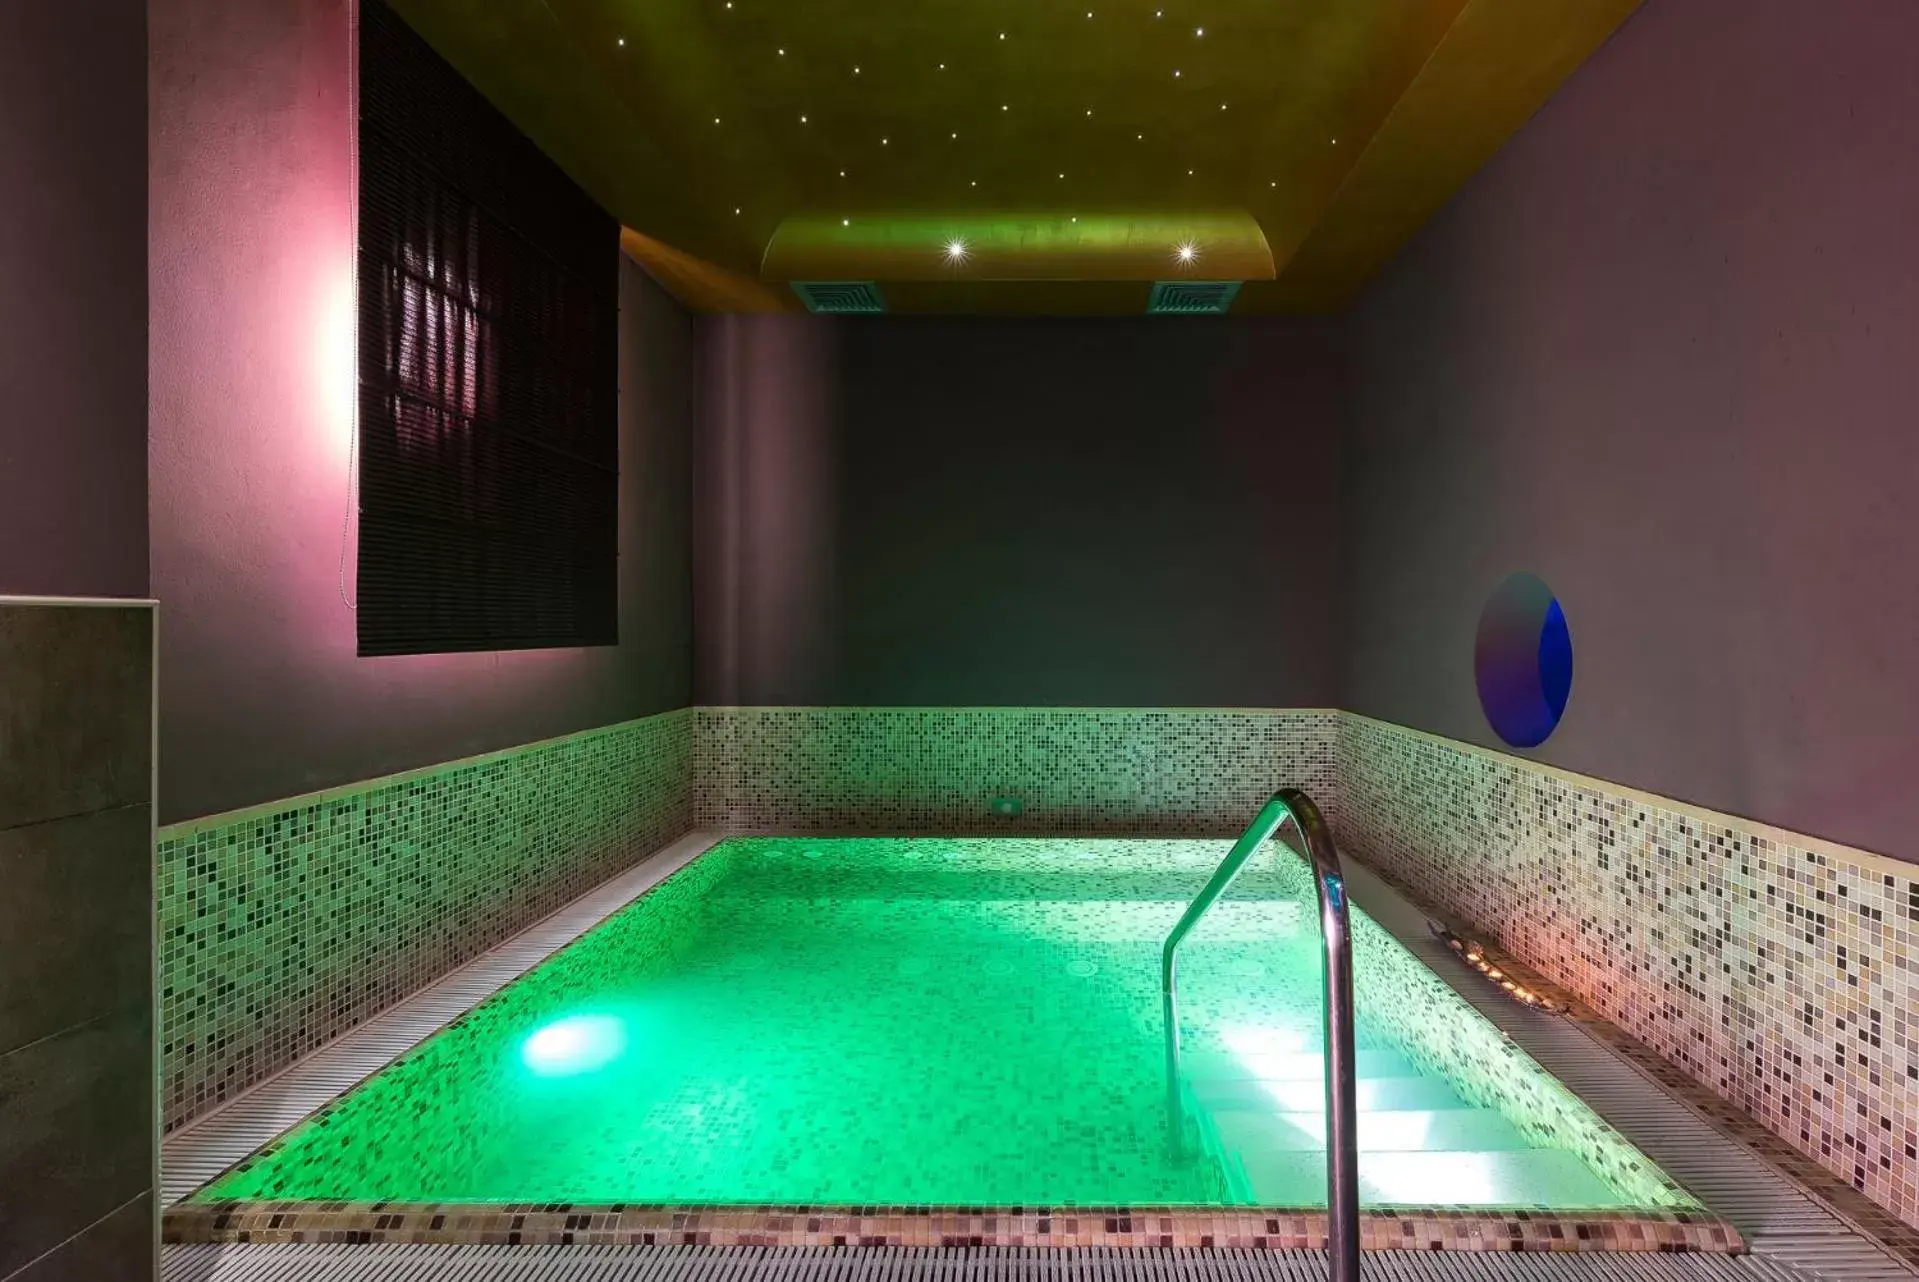 Hot Tub, Swimming Pool in Sovrana Hotel & SPA